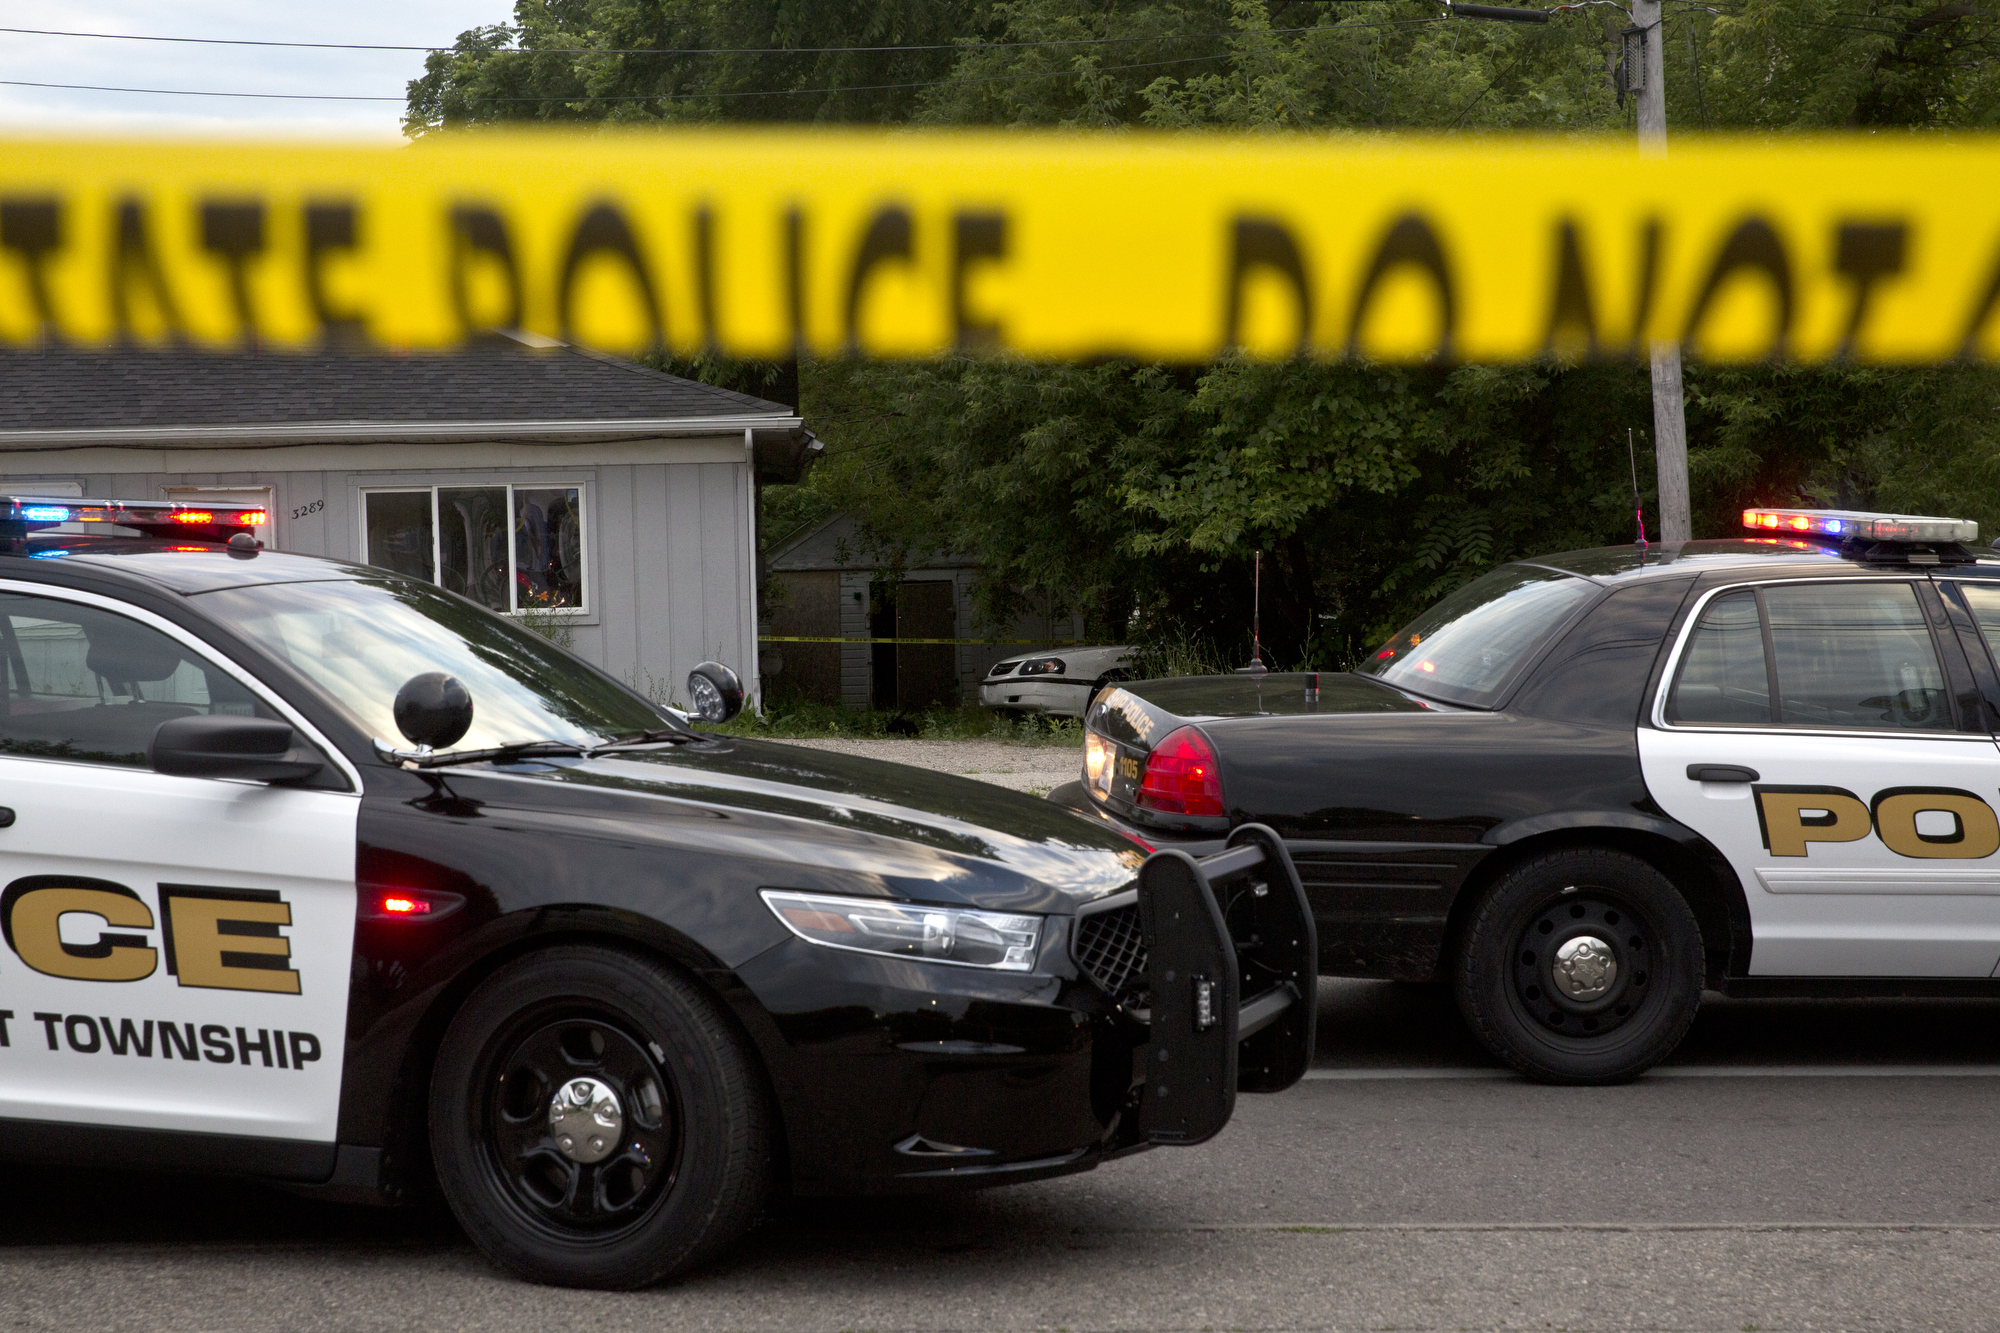 Трима служители на реда бяха убити в Северна Каролина, съобщи местната полиция